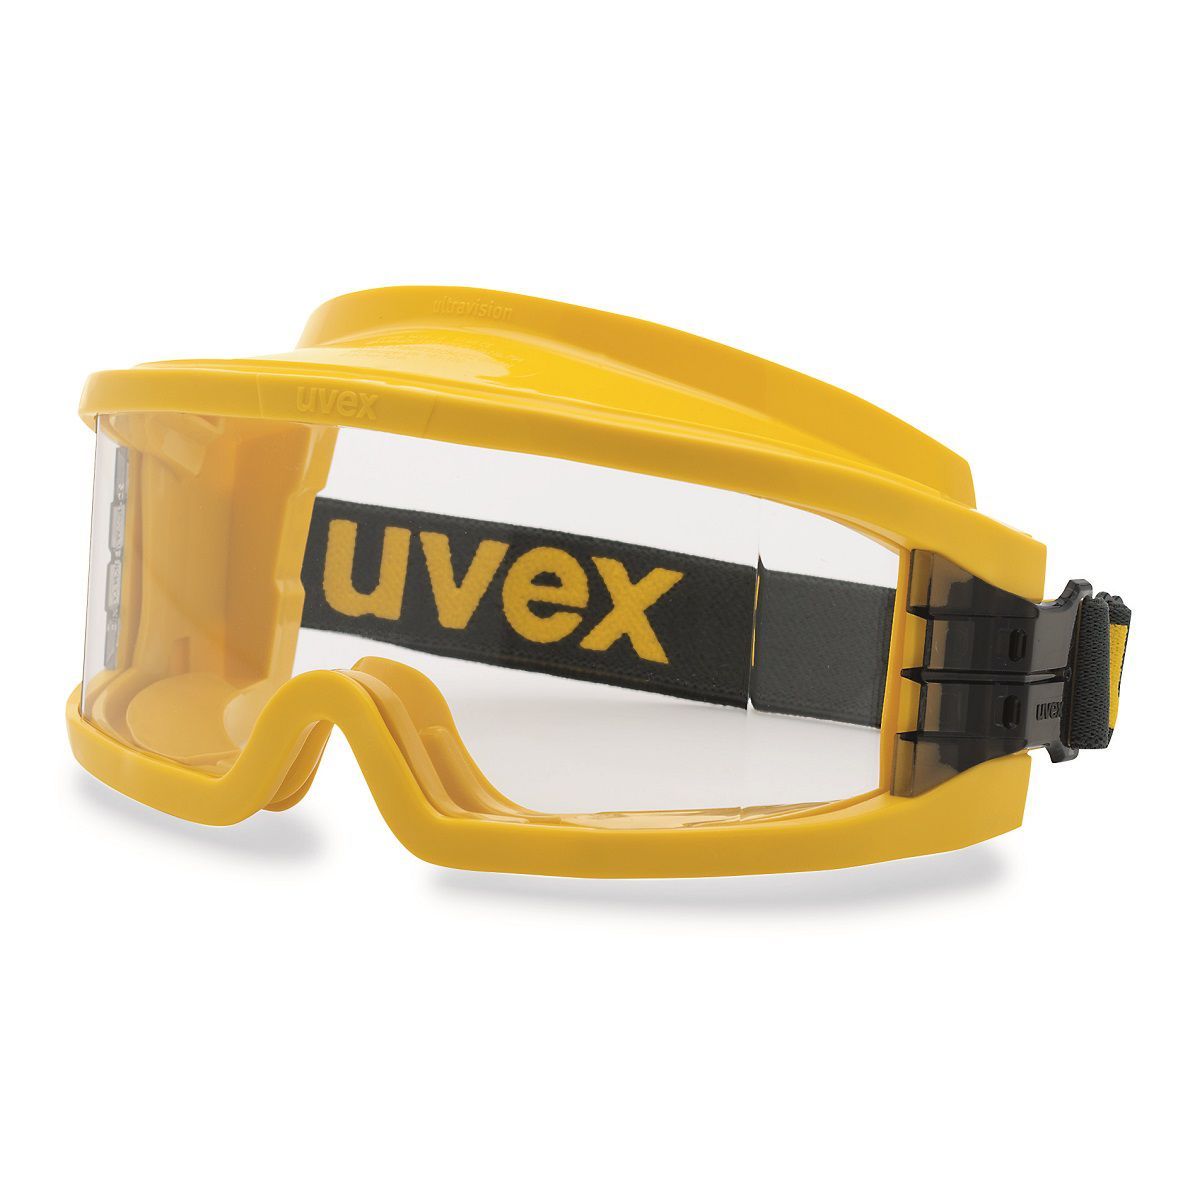 Uvex Arbeitsschutz- Vollsichtbrille 9301 ultravision, gelb, Scheibe: farblos, Schutz: 2-1,2 gasdicht